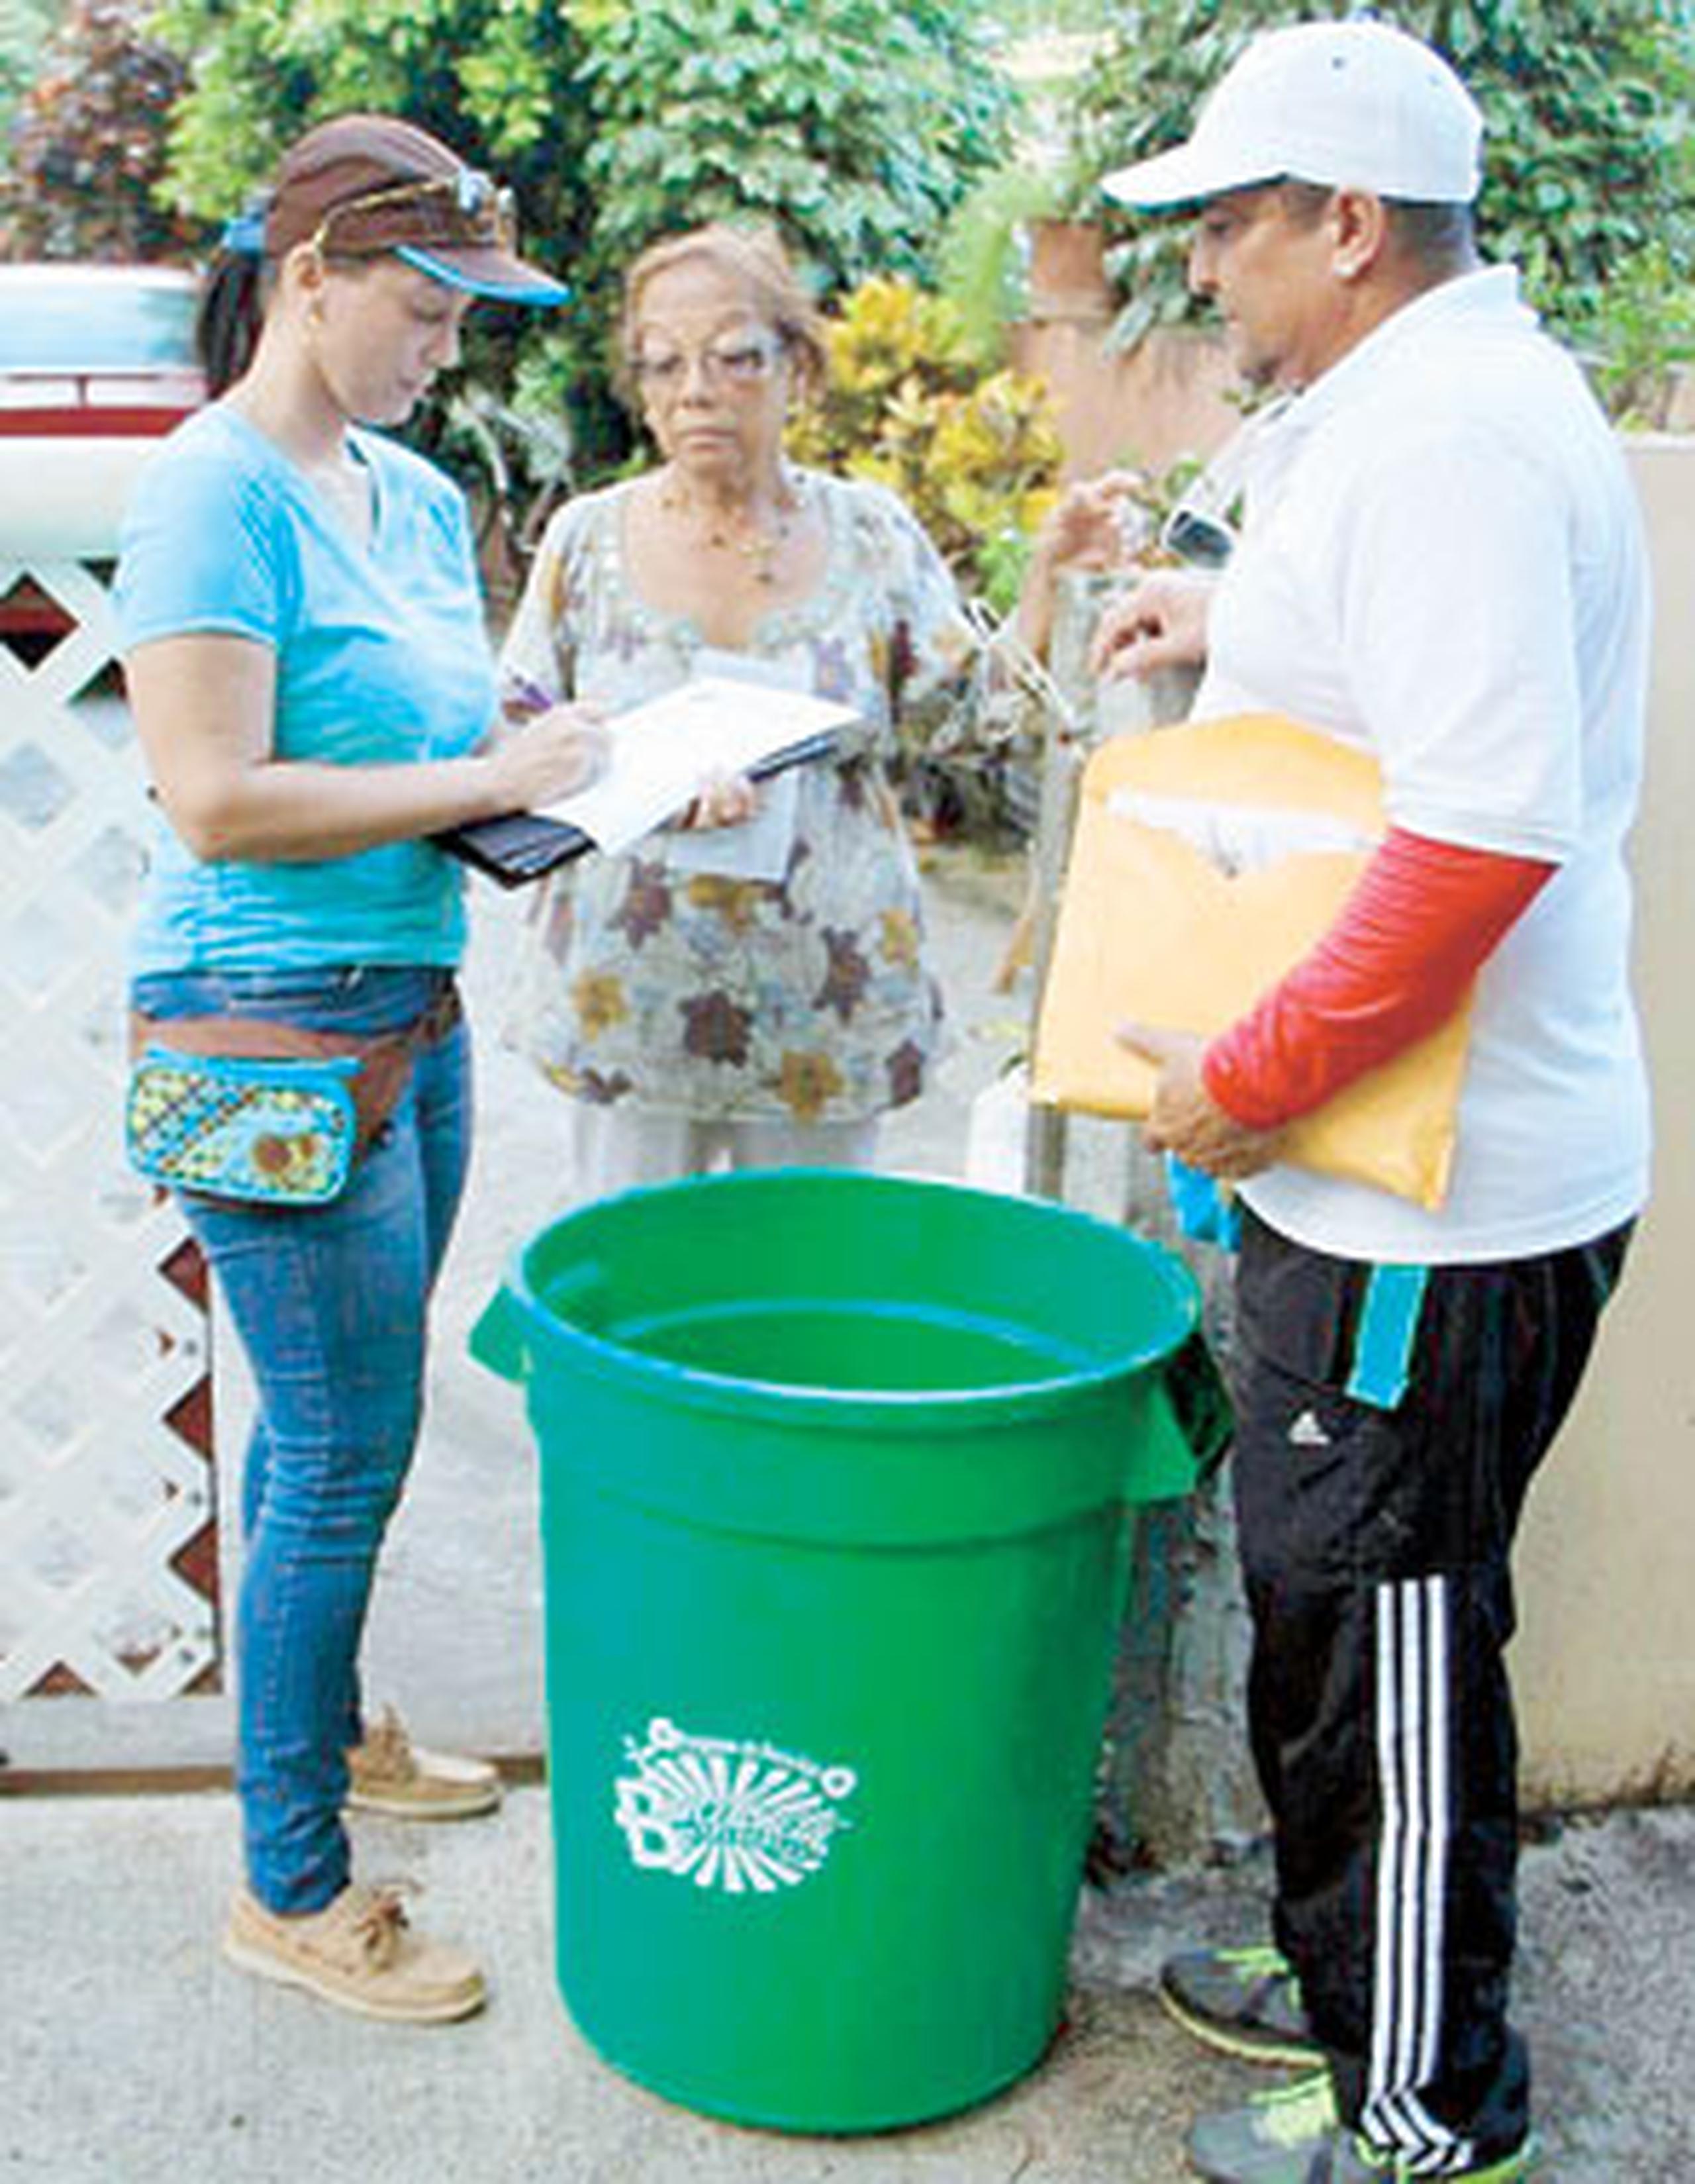 Como parte del programa, a los interesados se les entrega un formulario donde se establece el compromiso de reciclar. (Suministrada)